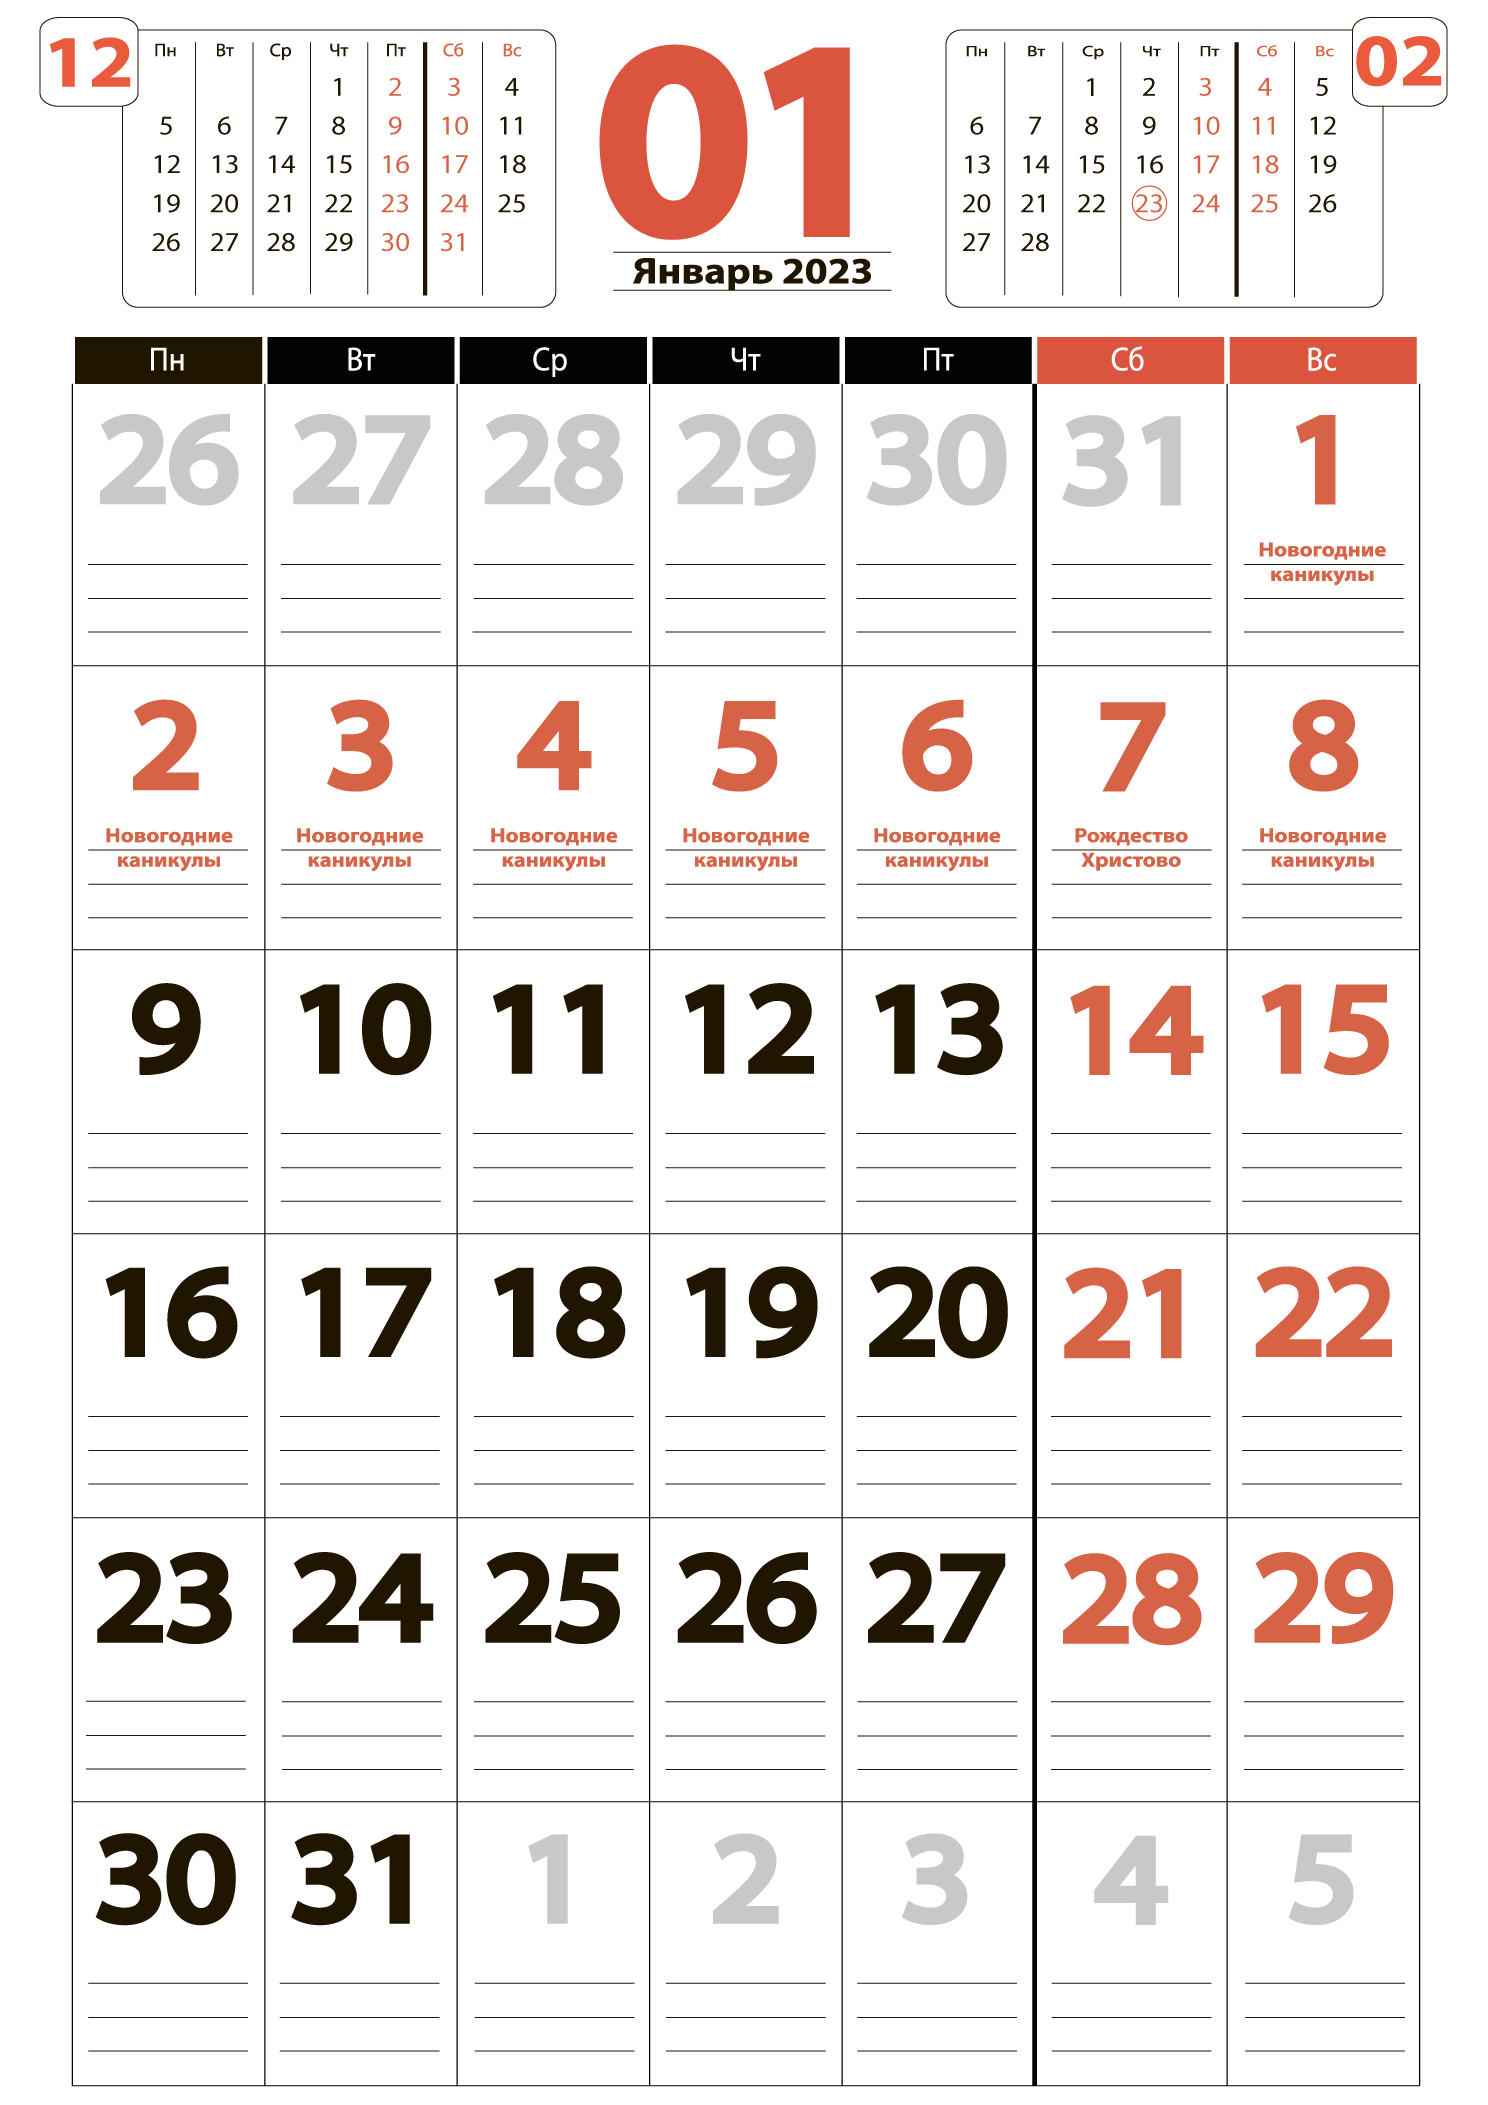 Печать крупного календаря на январь 2023